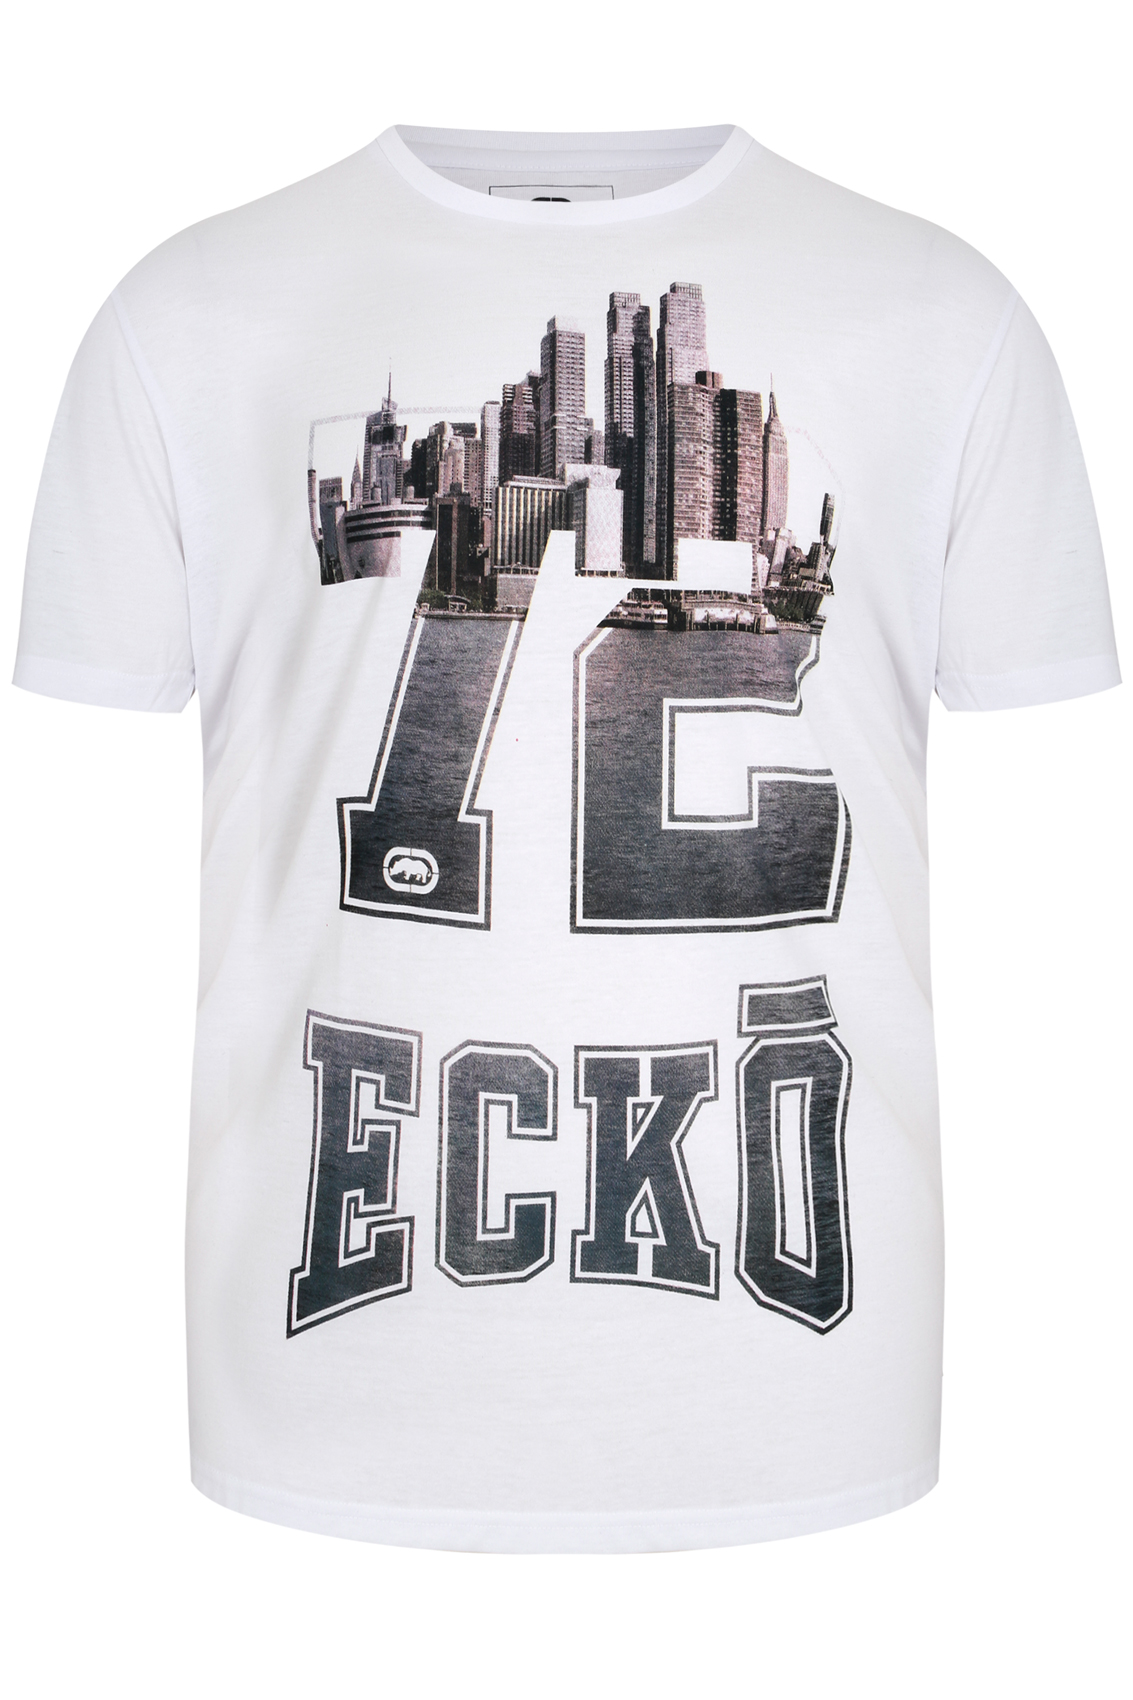 ECKO White Crew Neck Short Sleeve T-Shirt Size L,XL,2XL,3XL,4XL,5XL,6XL